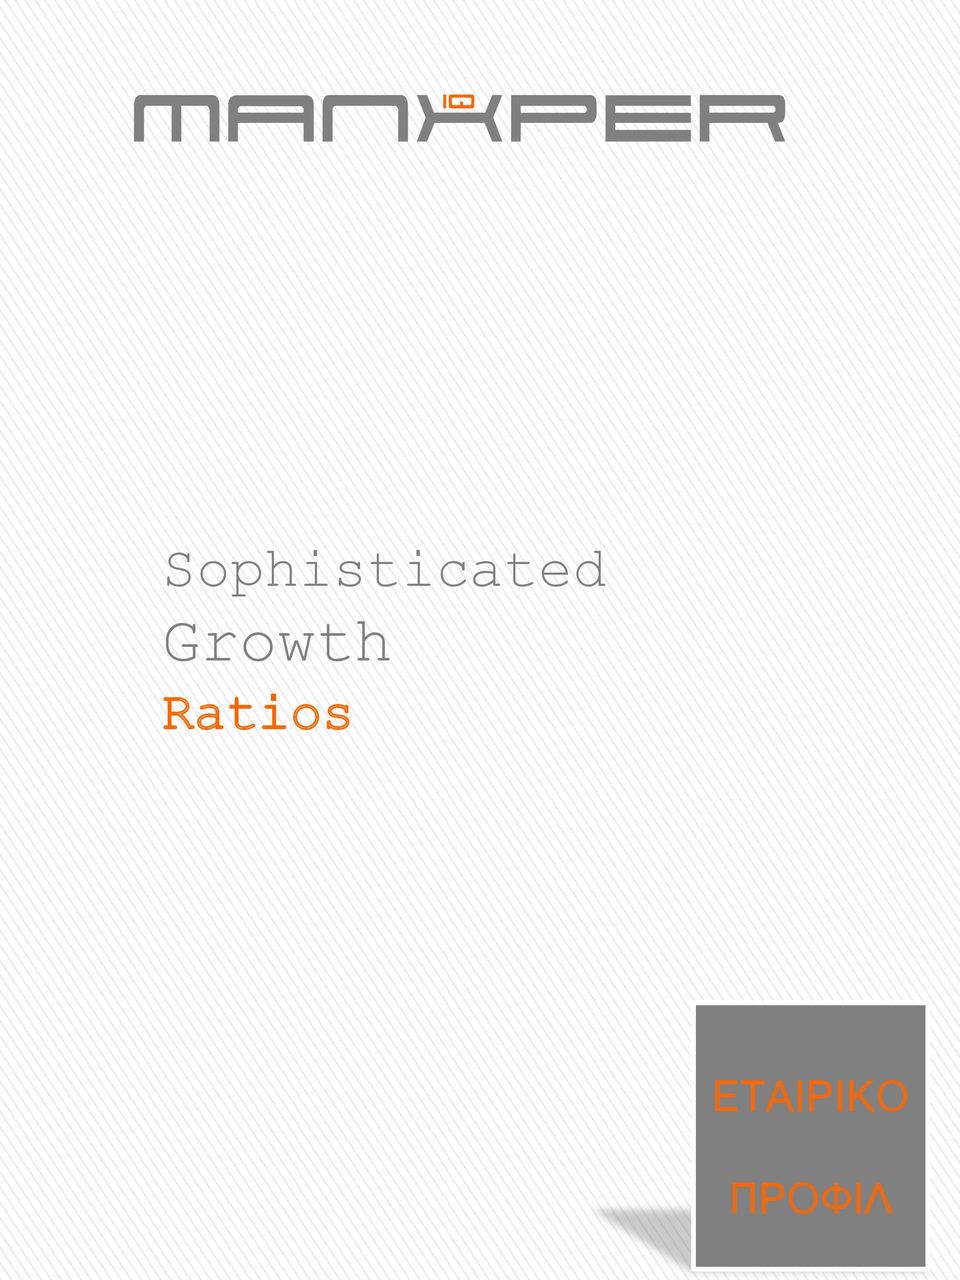 Growth Ratios